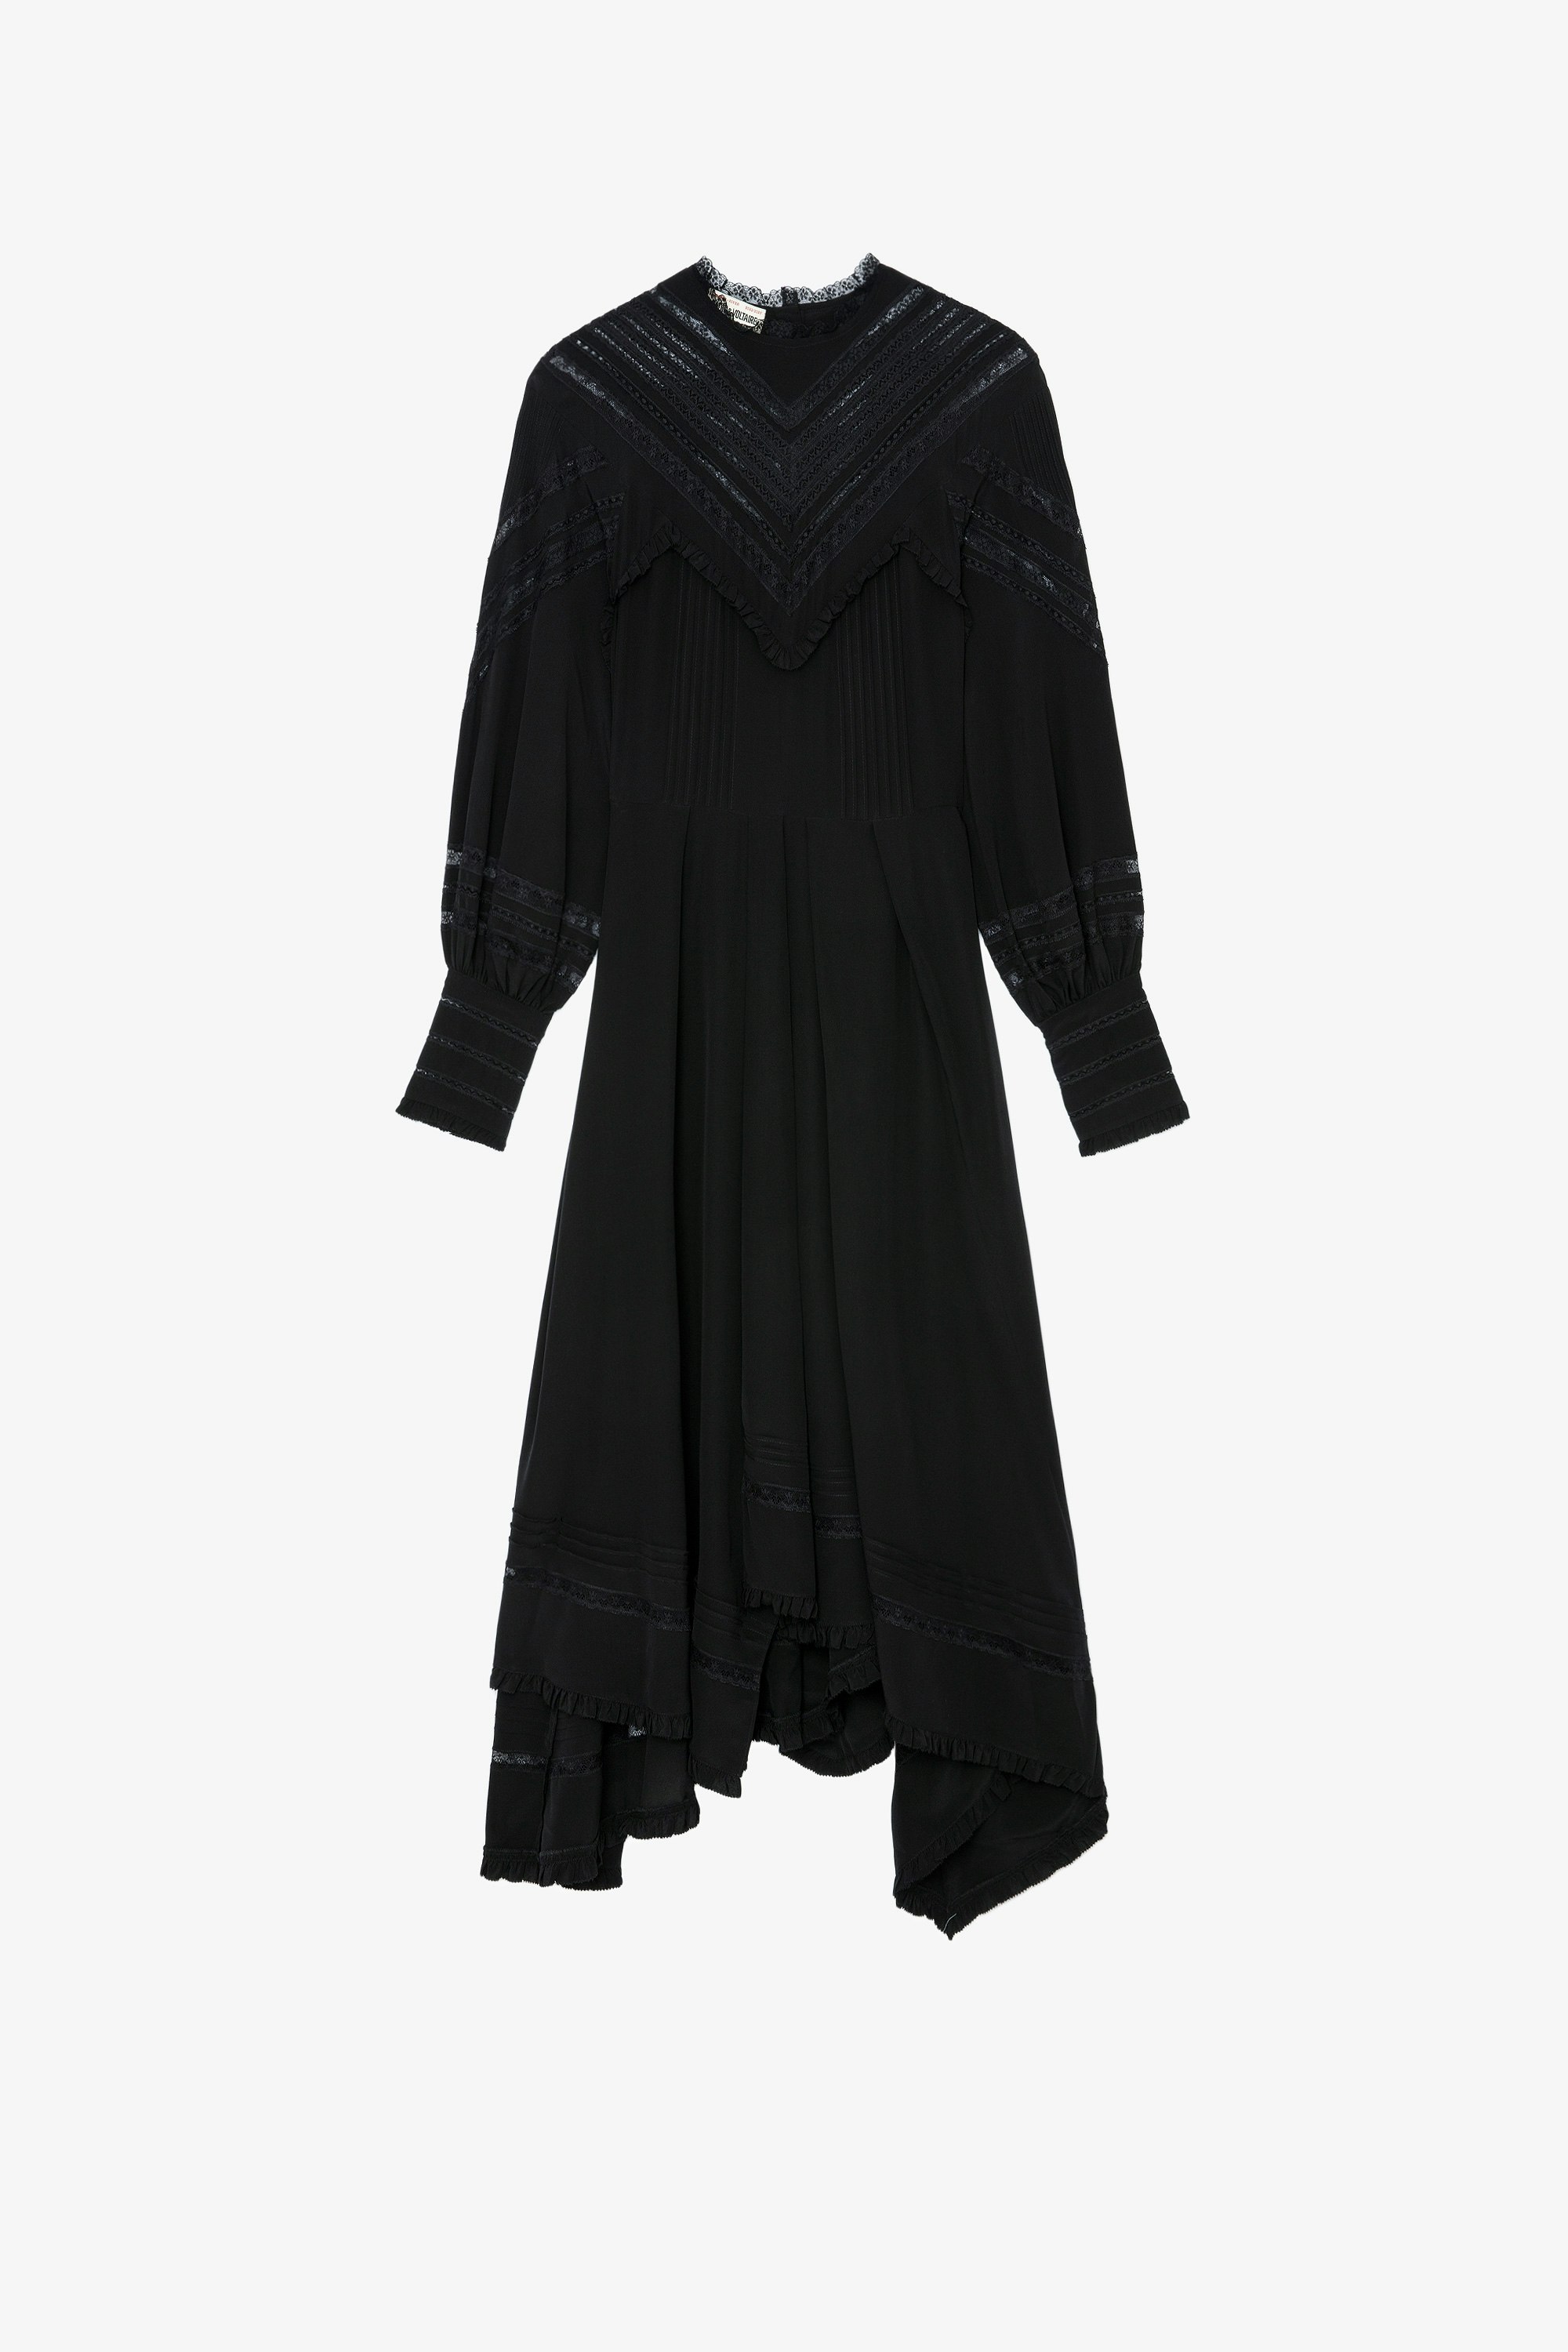 Vestido de seda Rozyl Vestido asimétrico largo de seda negra con efecto drapeado y falda asimétrica para mujer 